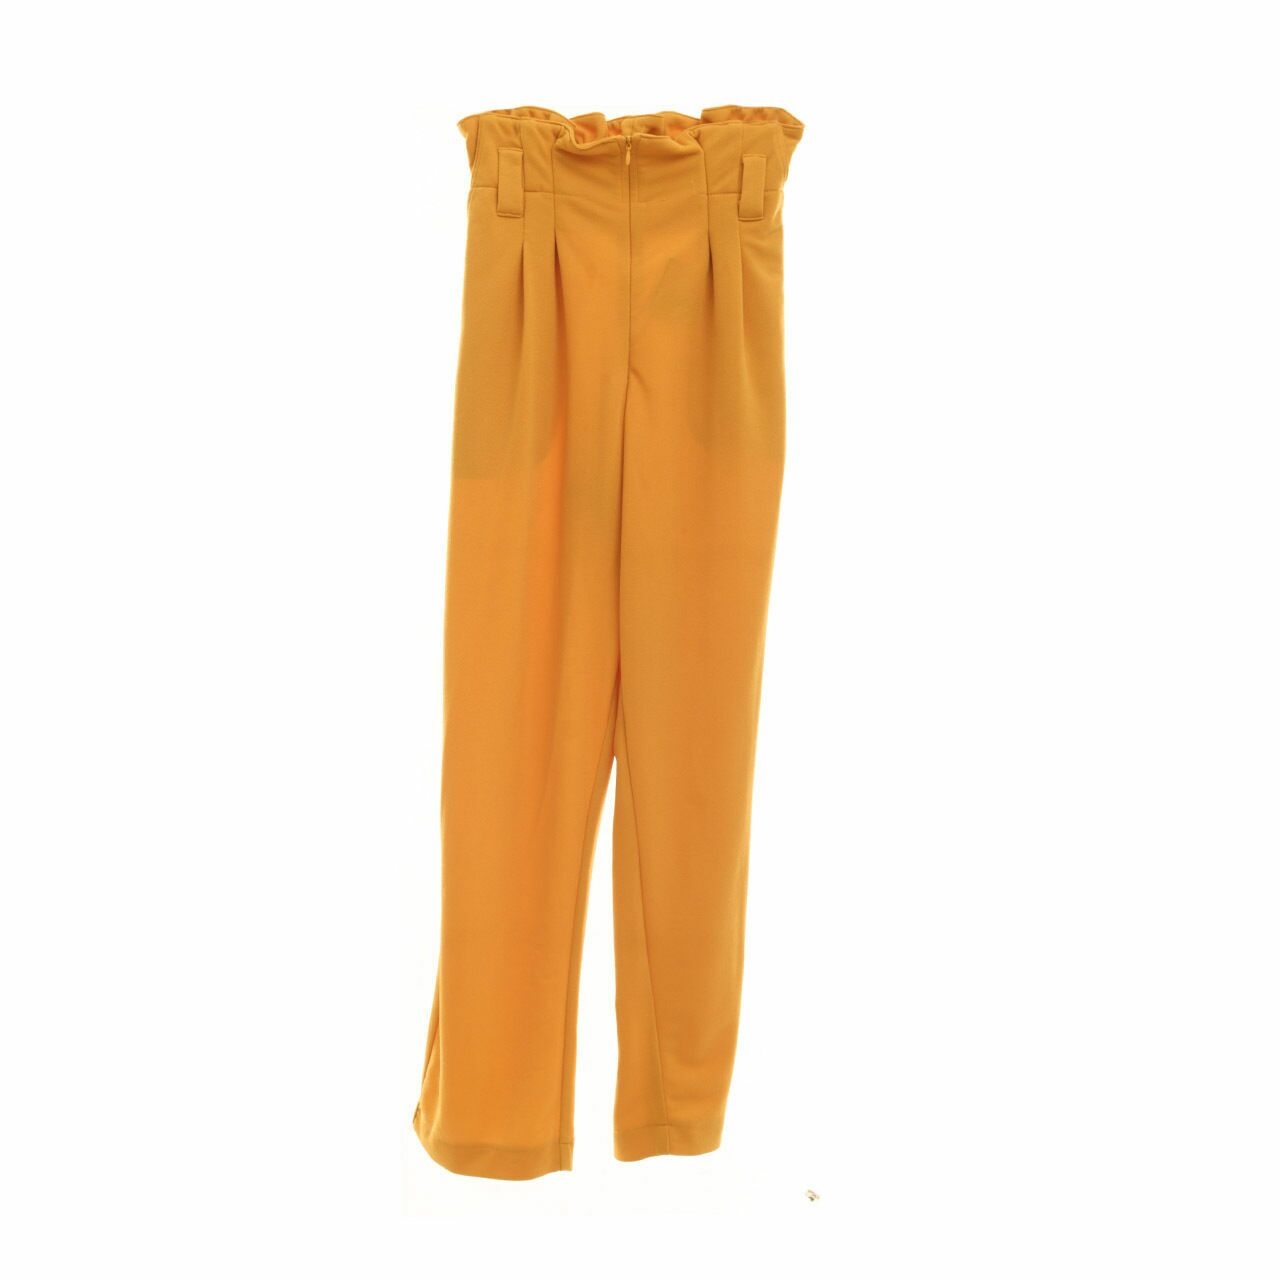 Artee Yellow Long Pants